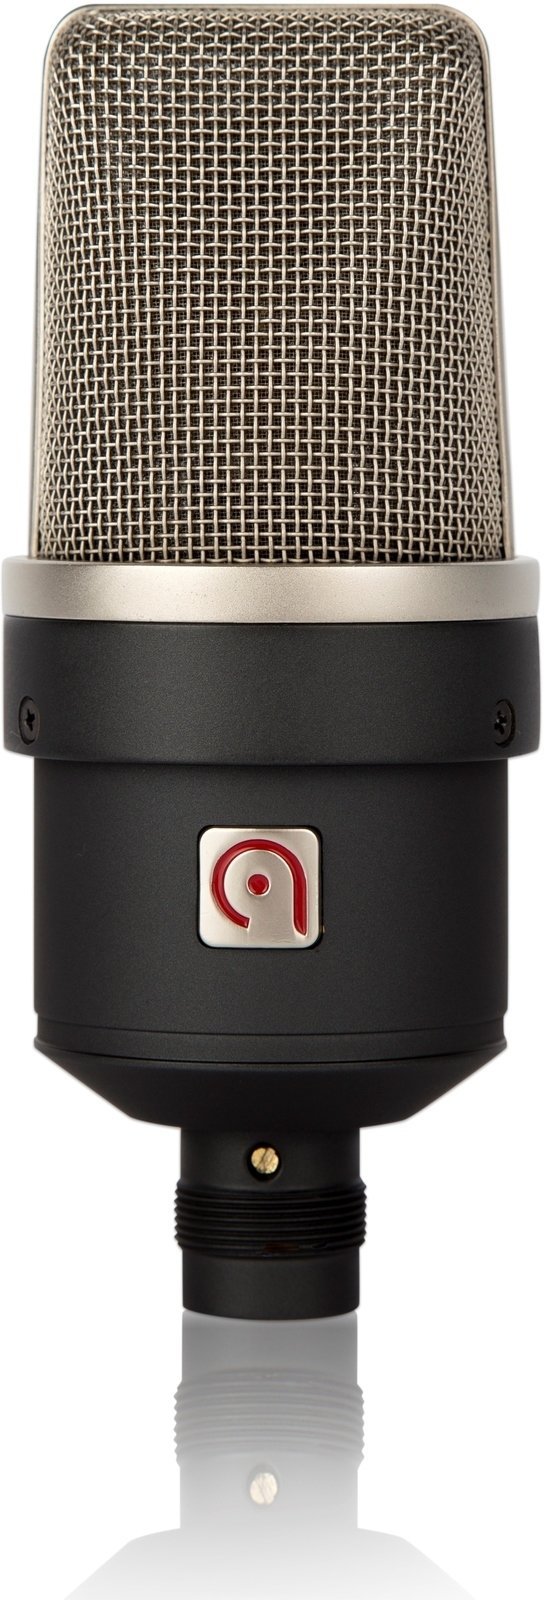 Vokal kondensator mikrofon Audio Probe LISA 9 Black